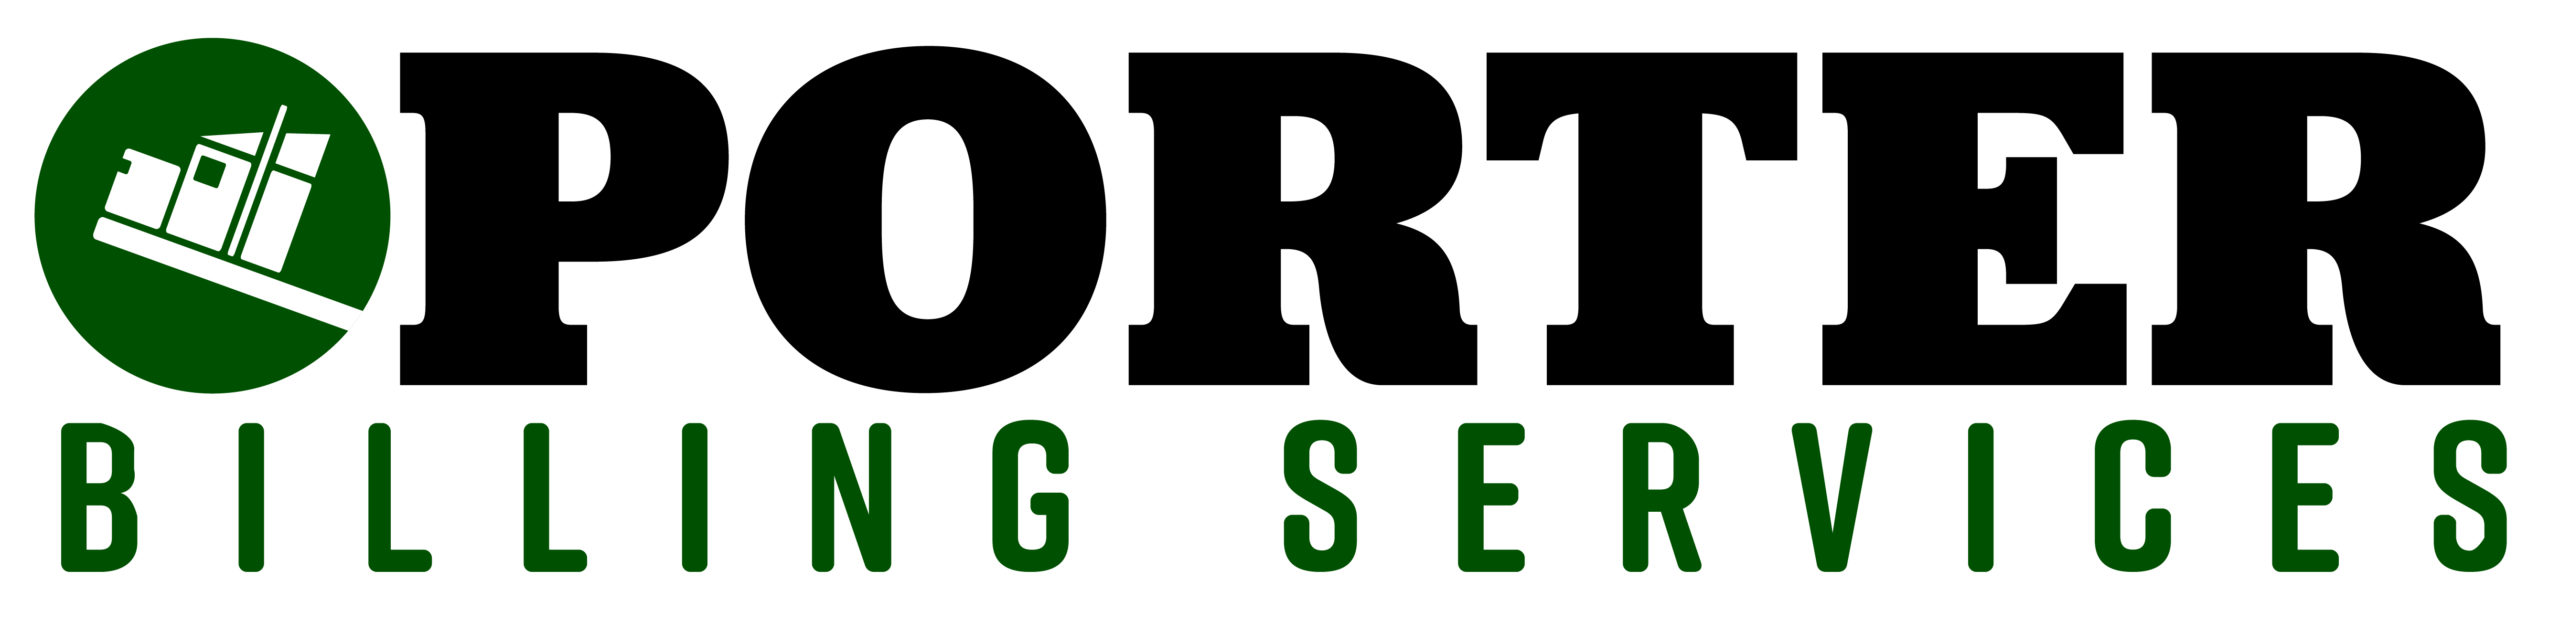 Porter Billings Logo